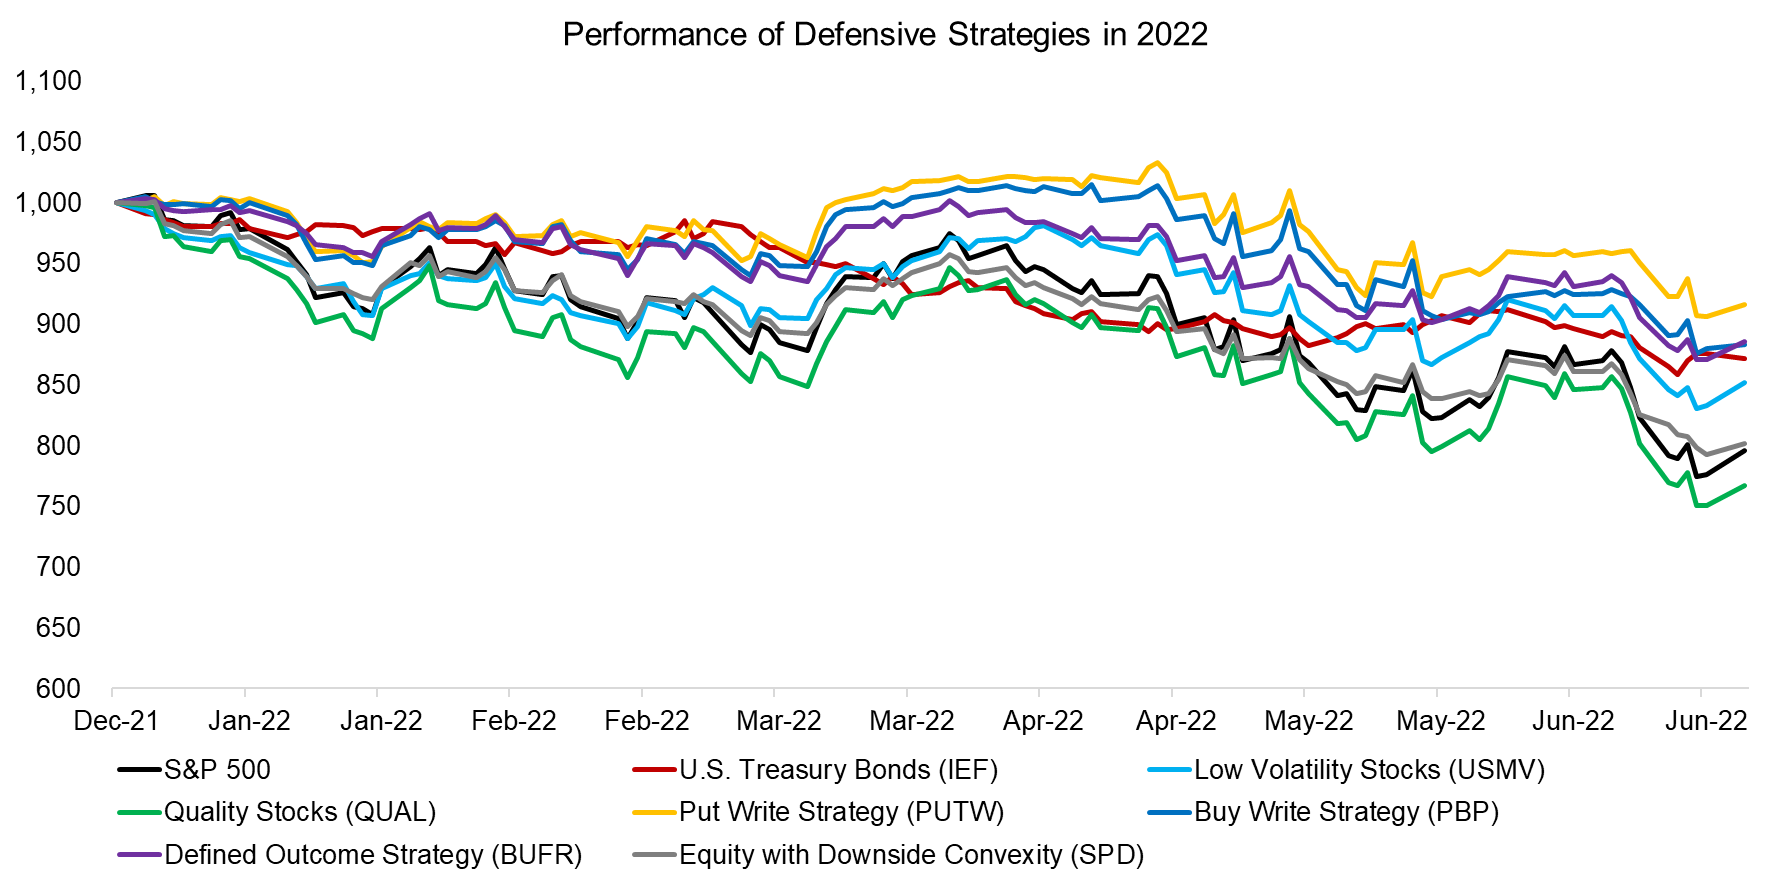 Performance of Defensive Strategies in 2022